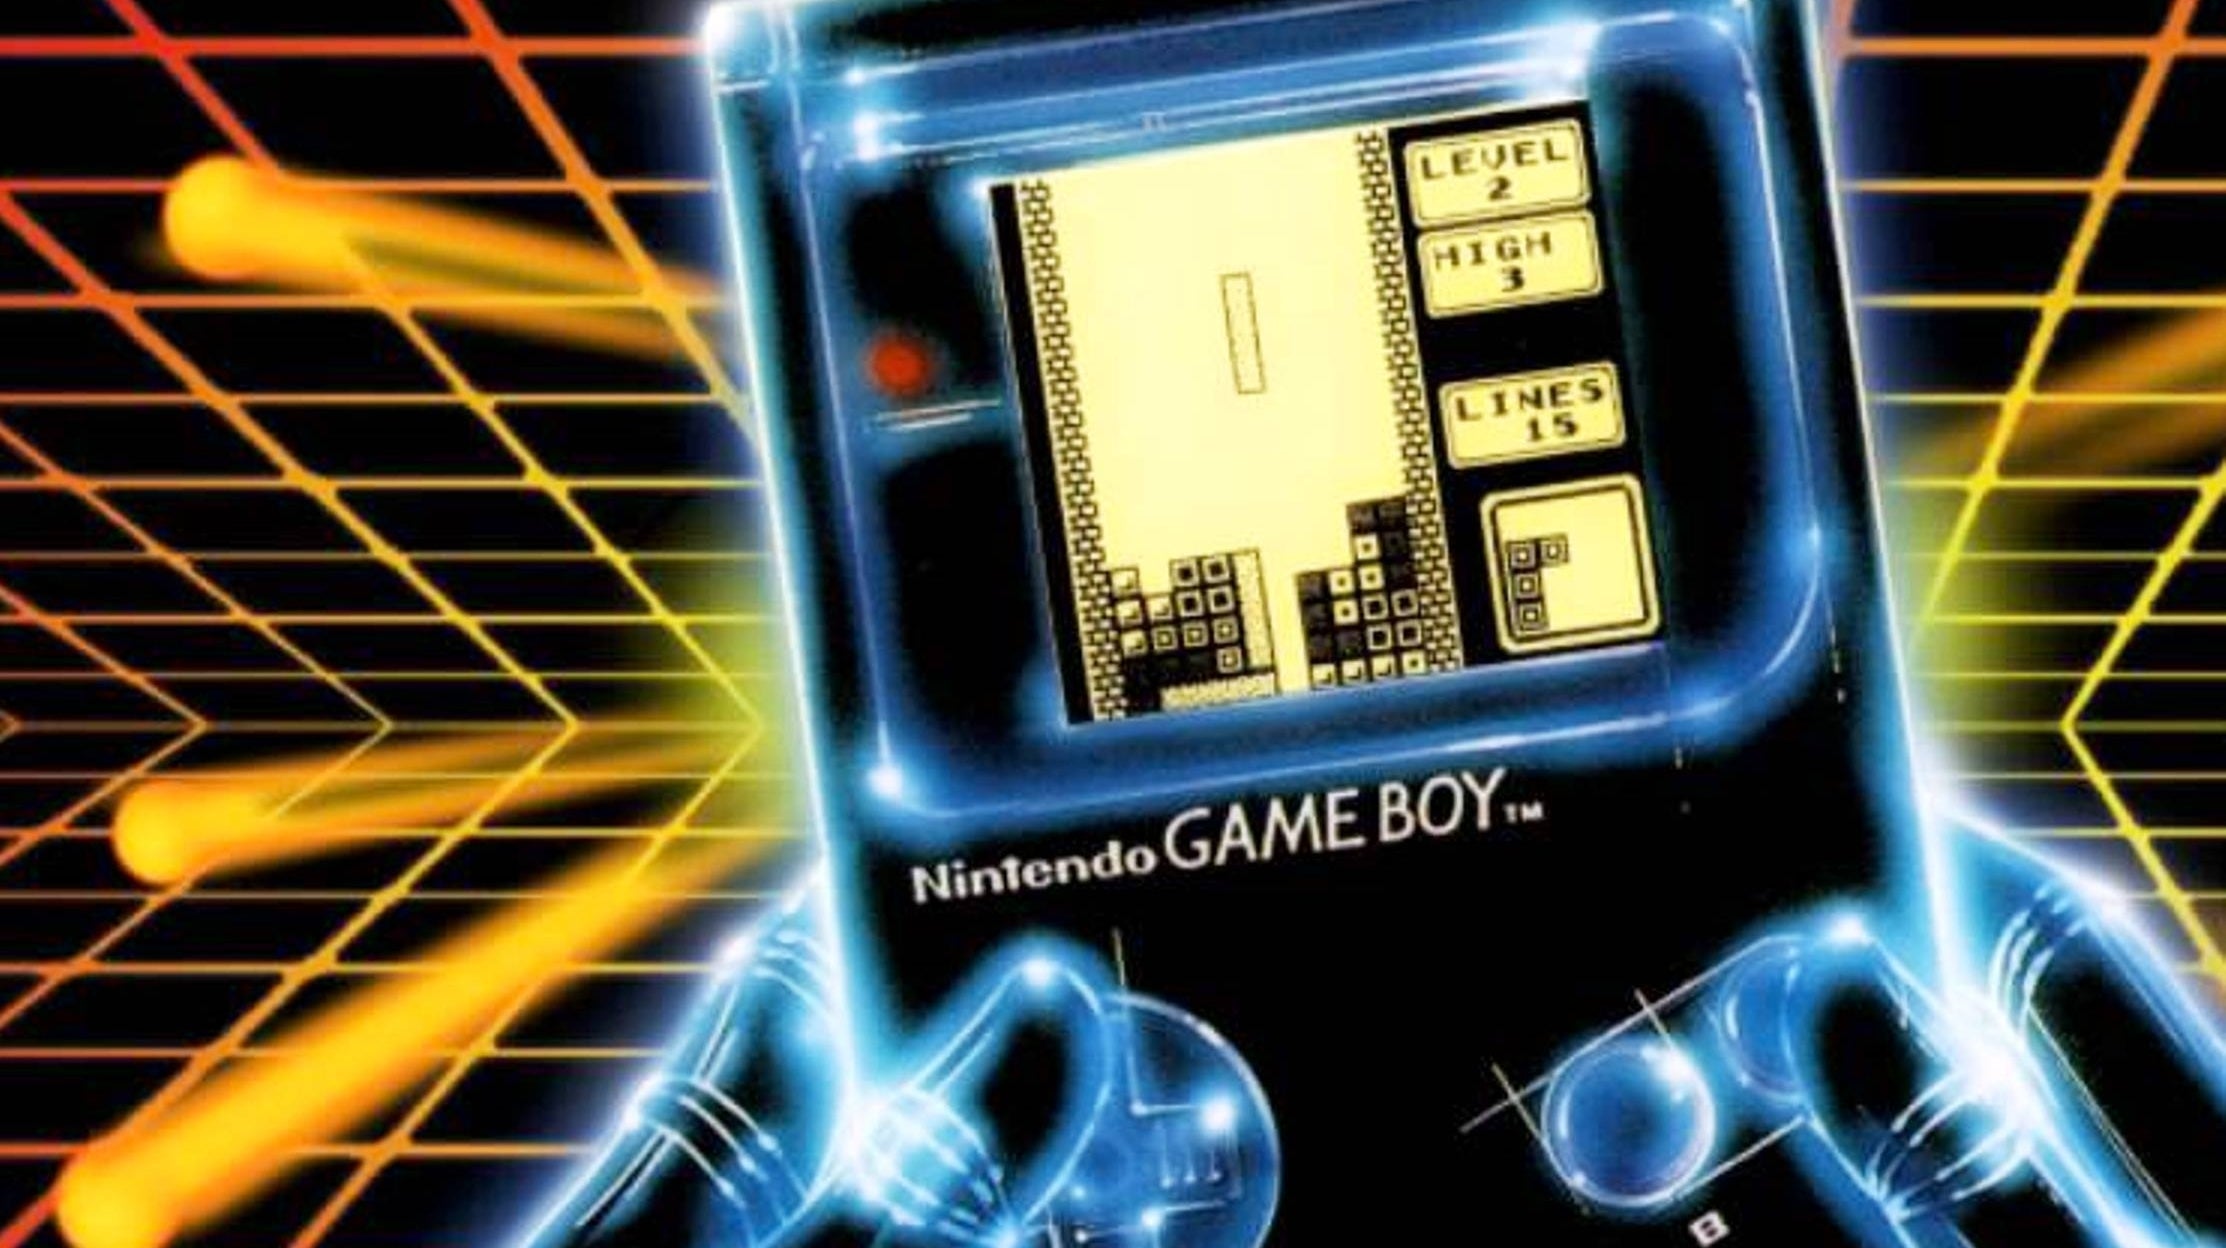 Bilder zu Nintendo Switch Online: Game Boy Emulator offenbar geleakt